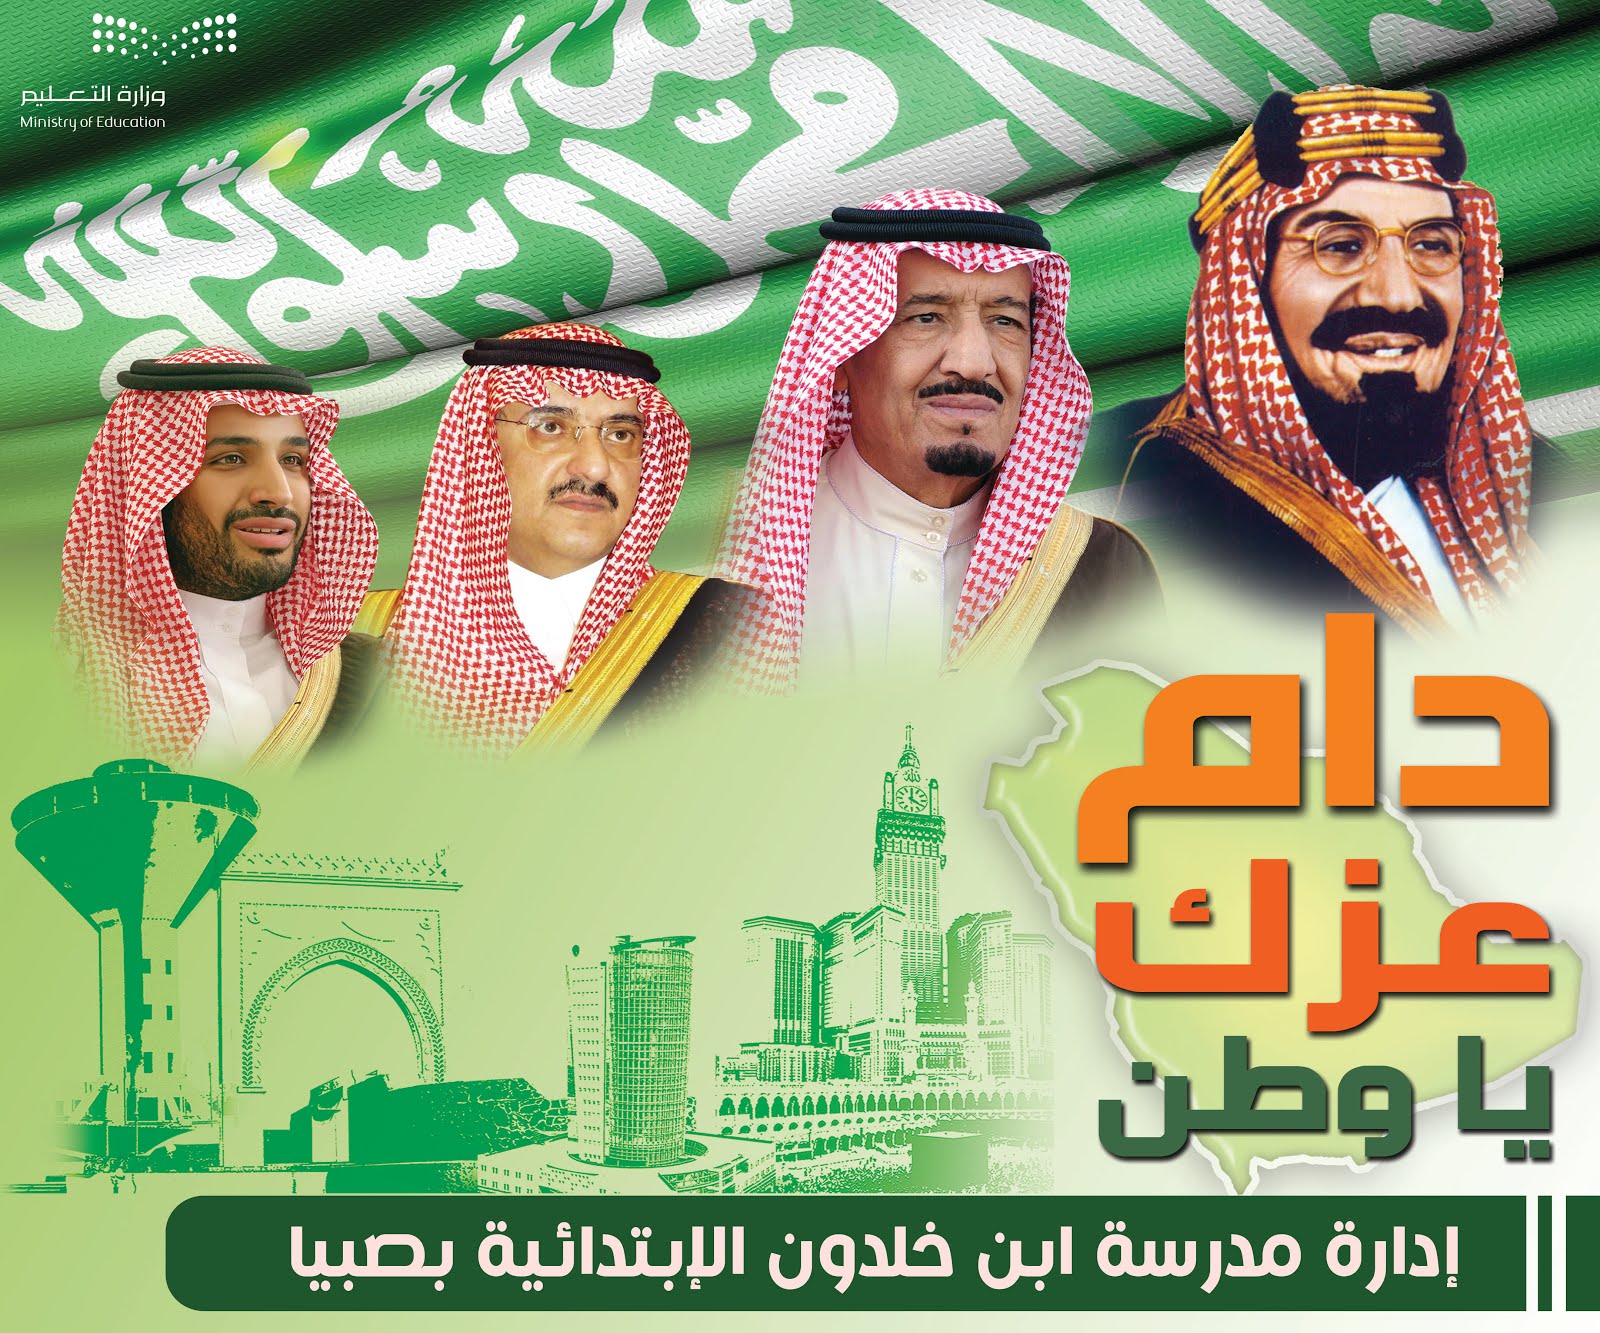 تصميم اليوم الوطني السعودي psd للتعديل عليه بدقة عالية ماي جرافكس